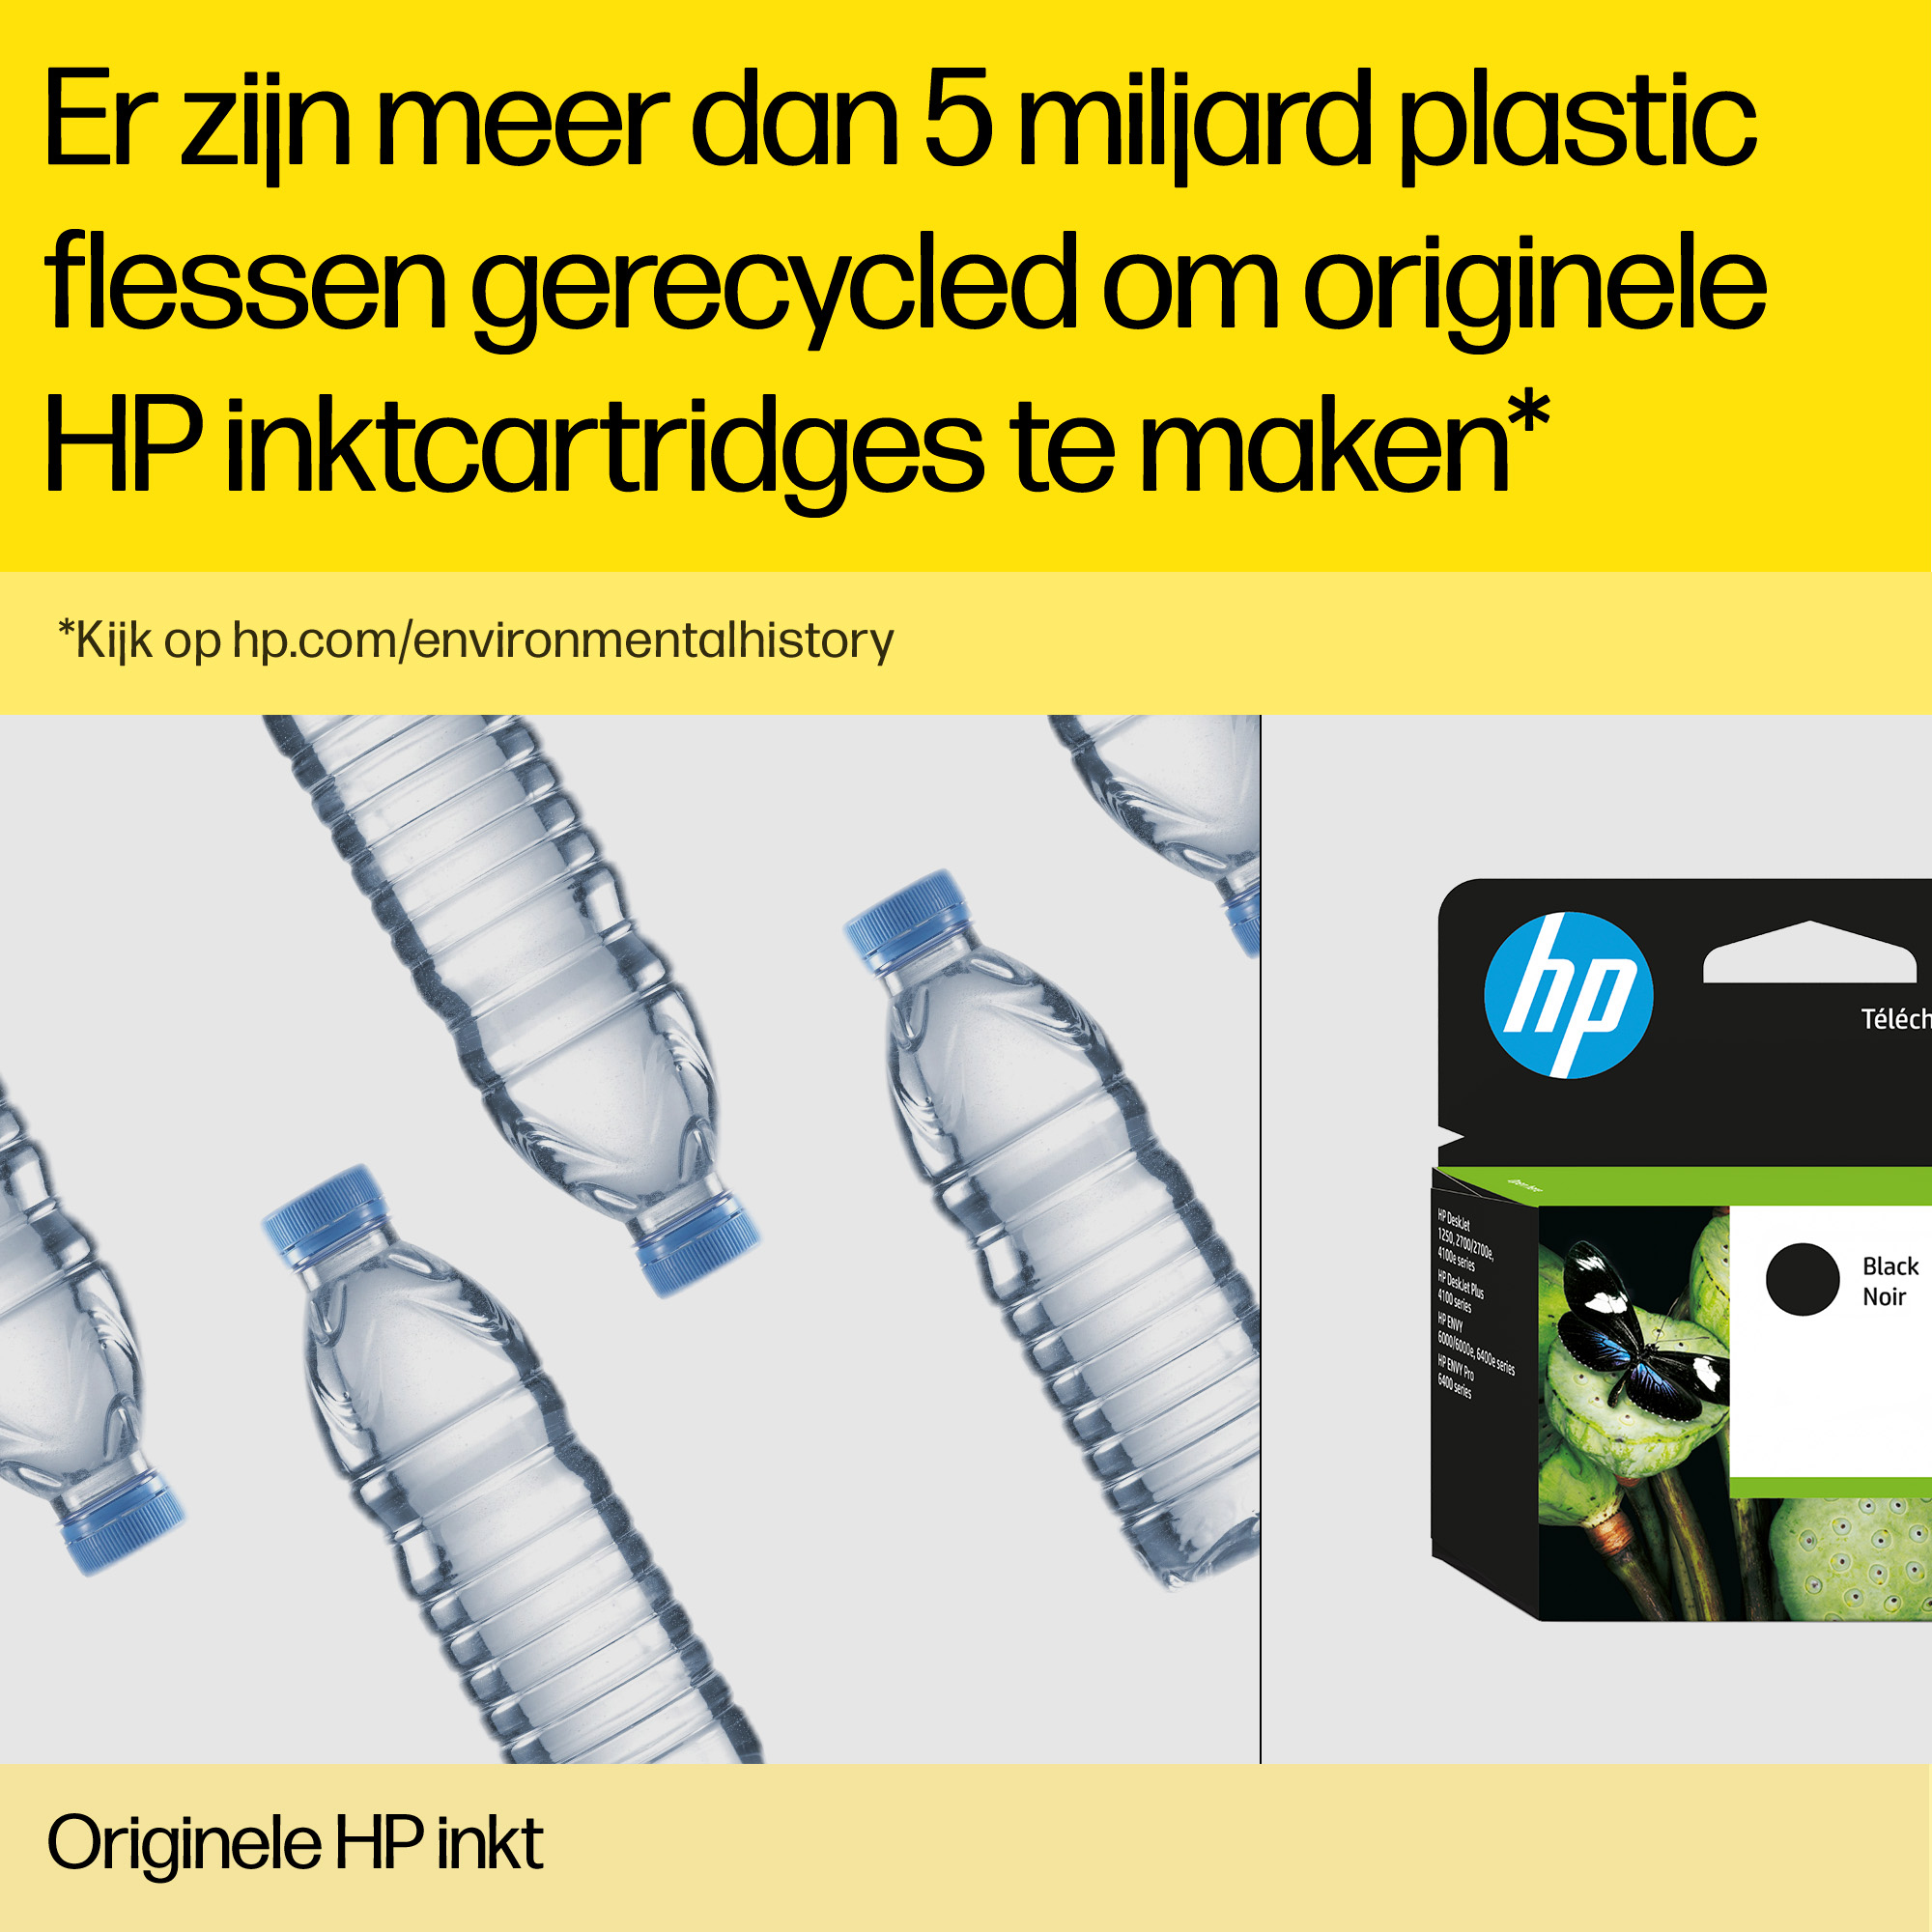 HP 745 - 300 ml - mit hoher Kapazität - Photo schwarz